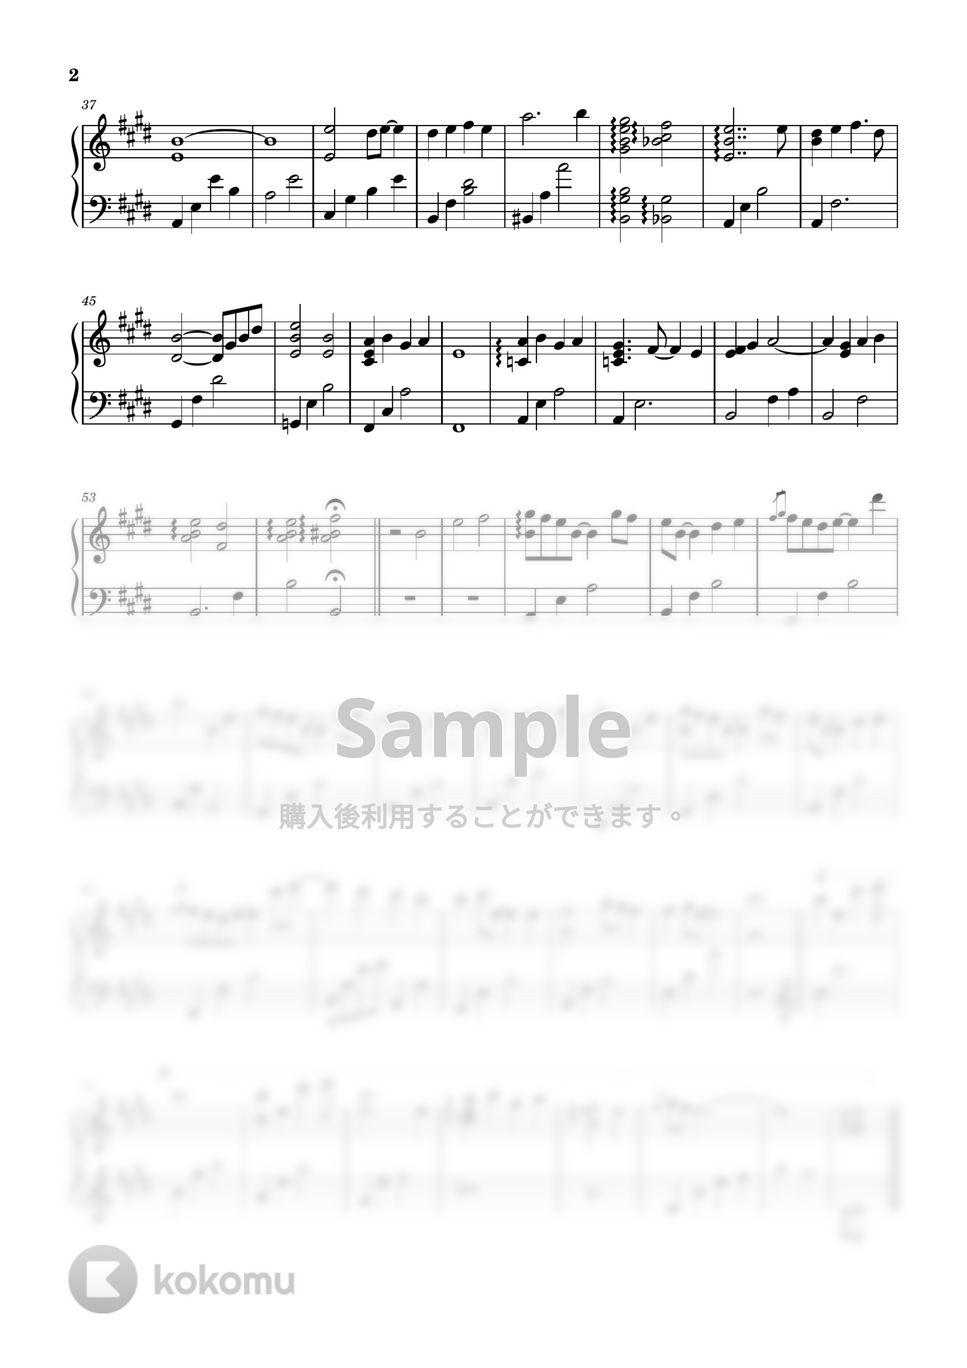 得田真裕 - silent snow piano (ピアノ/silent/得田真裕/silent snow piano) by kanapiano